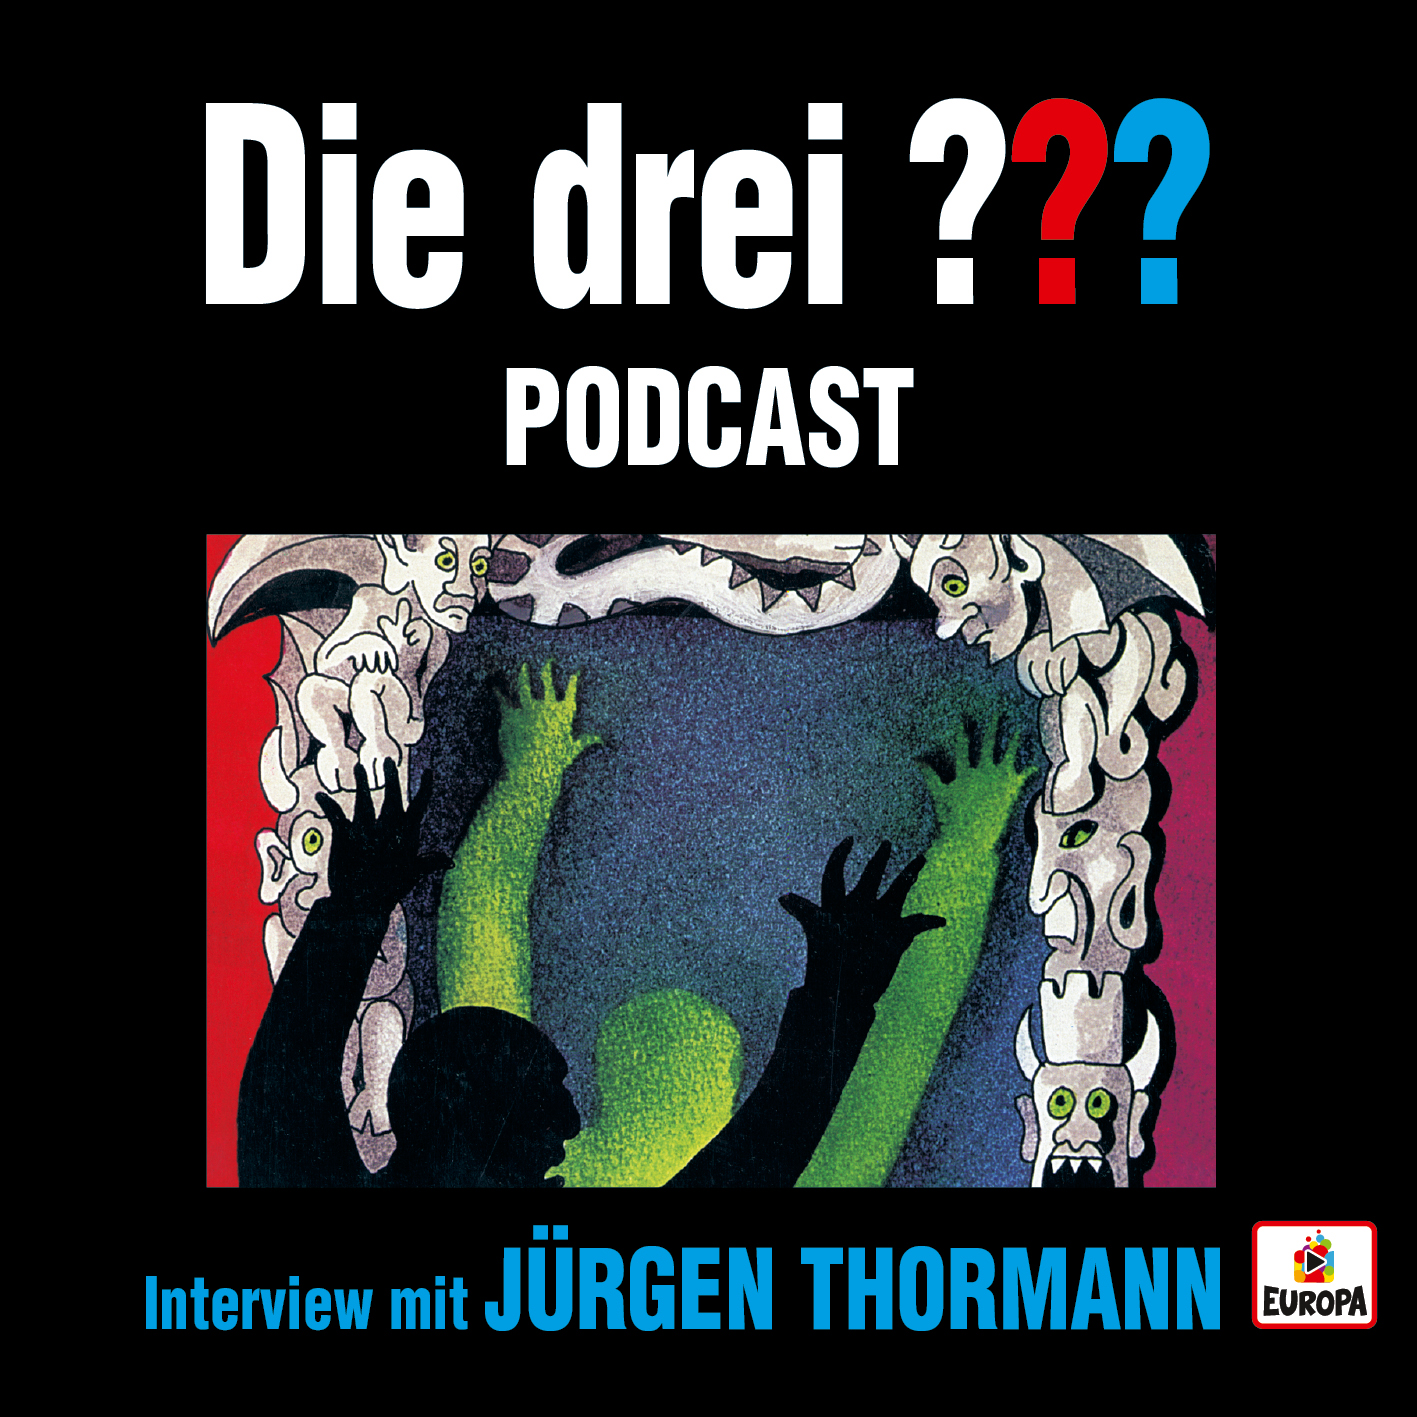 Die drei ??? und Jürgen Thormann - Podcast zum Hörbuch.